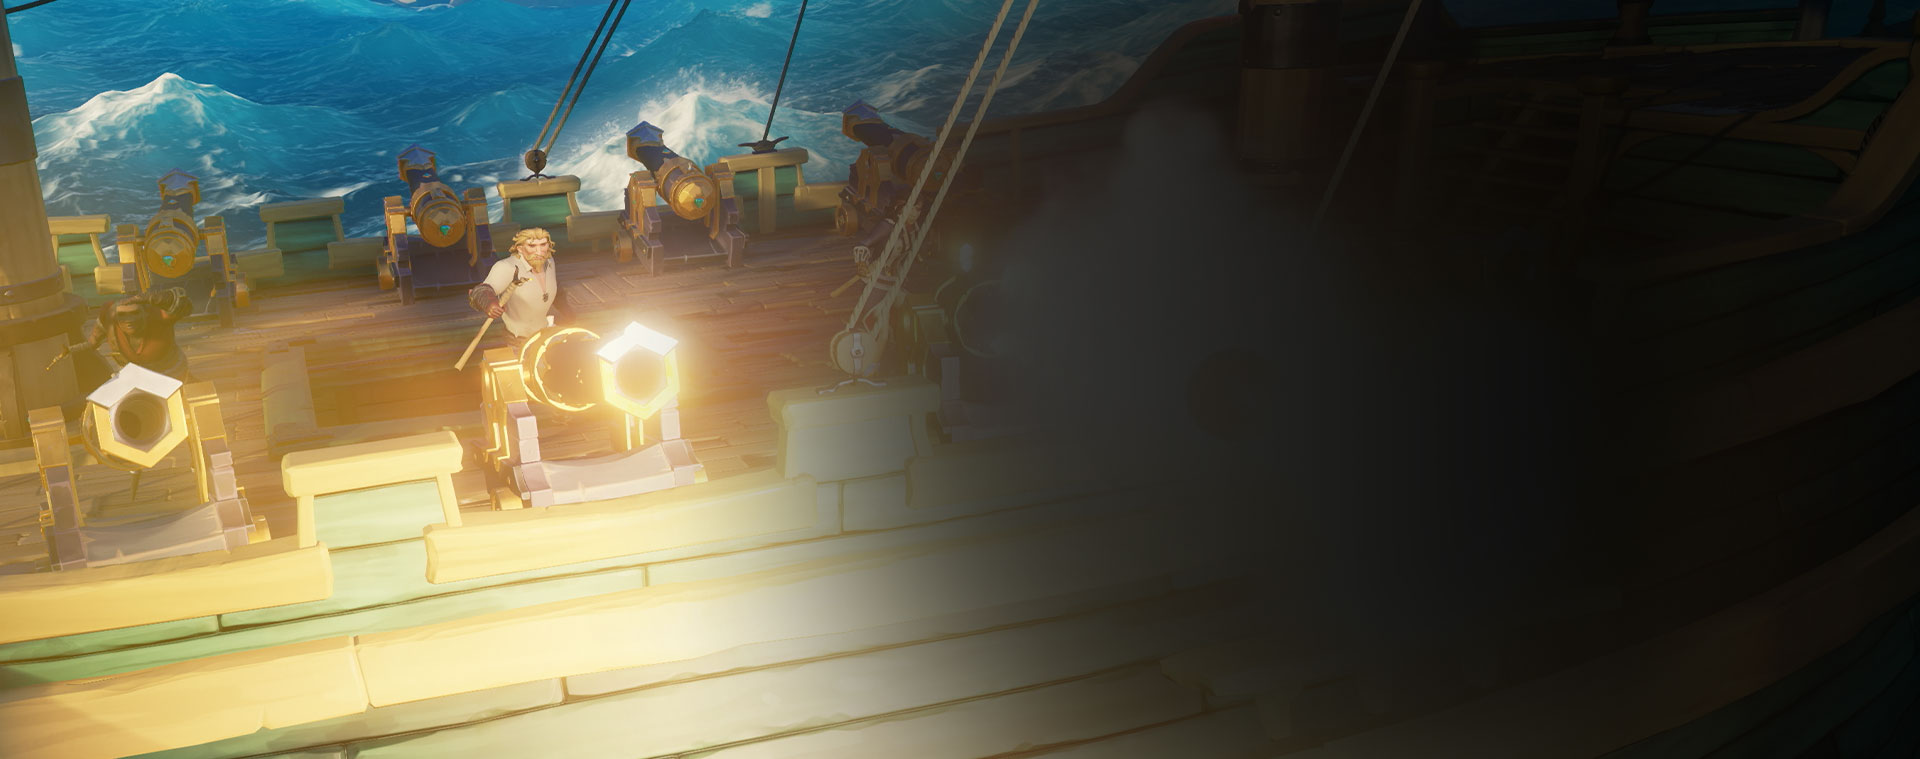 Karakterer fra Sea of Thieves som skyter kanoner fra et skip